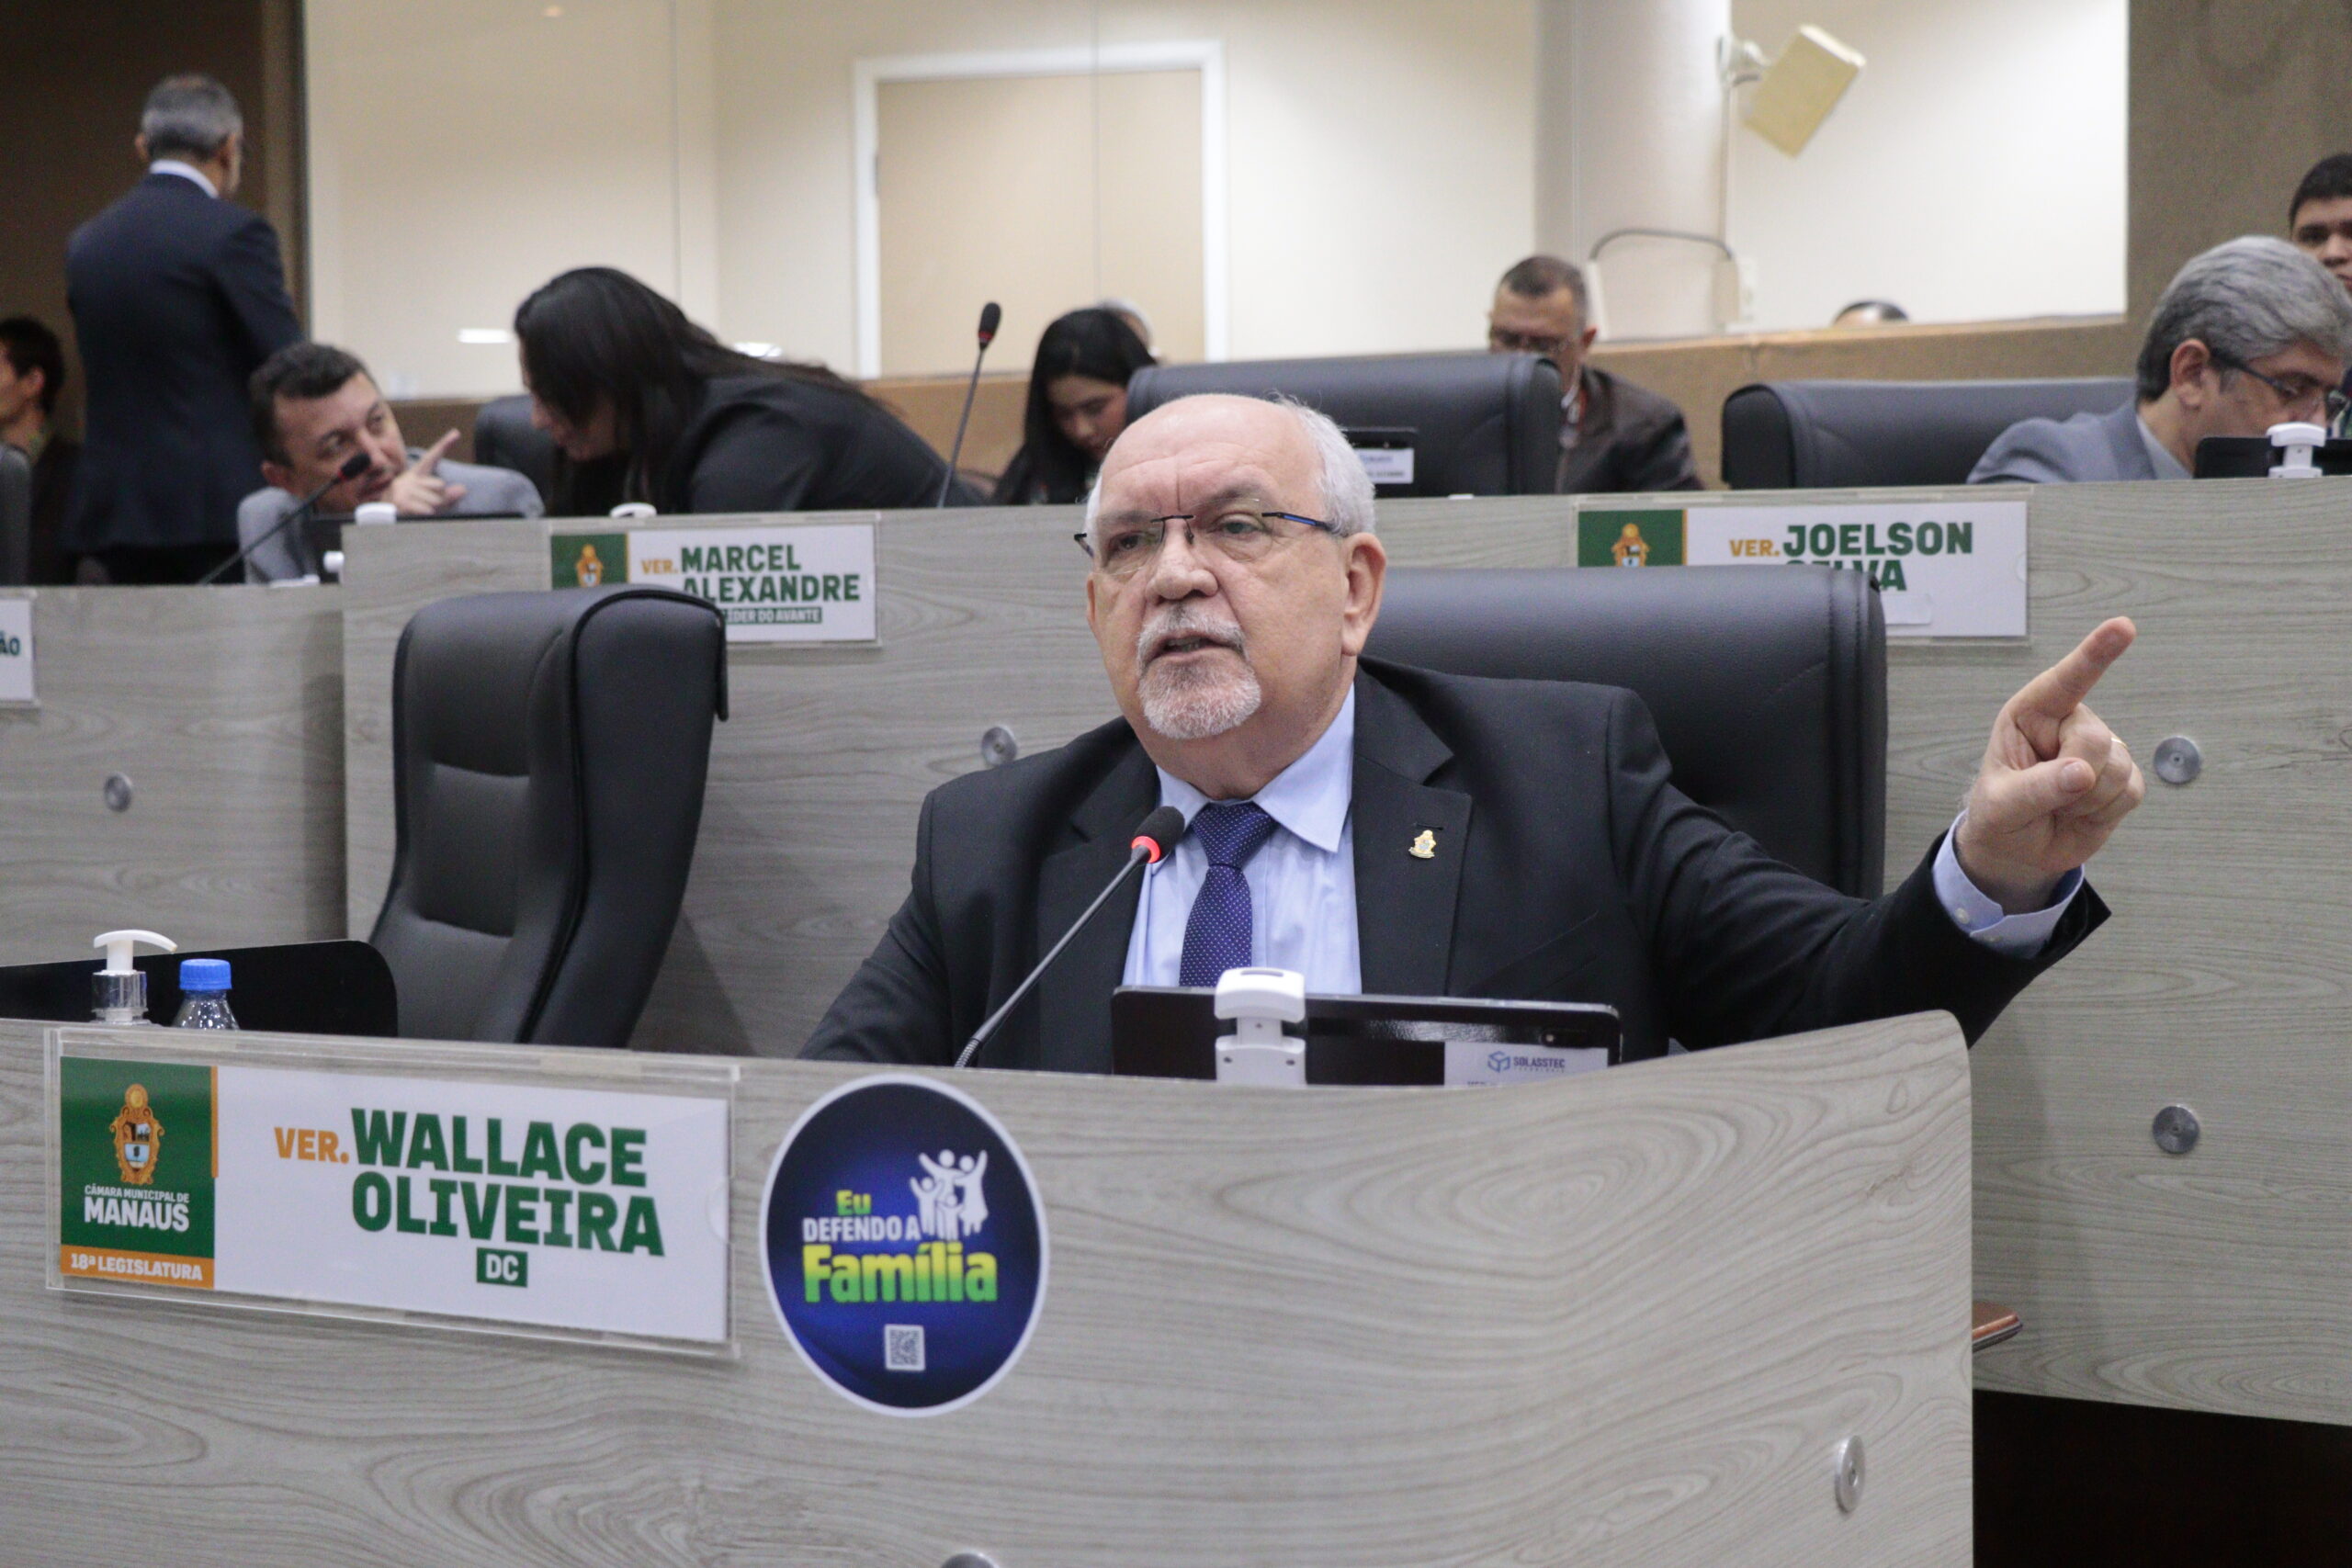 Vereador Wallace Oliveira repudia assédio contra mulheres dentro de supermercado em Manaus